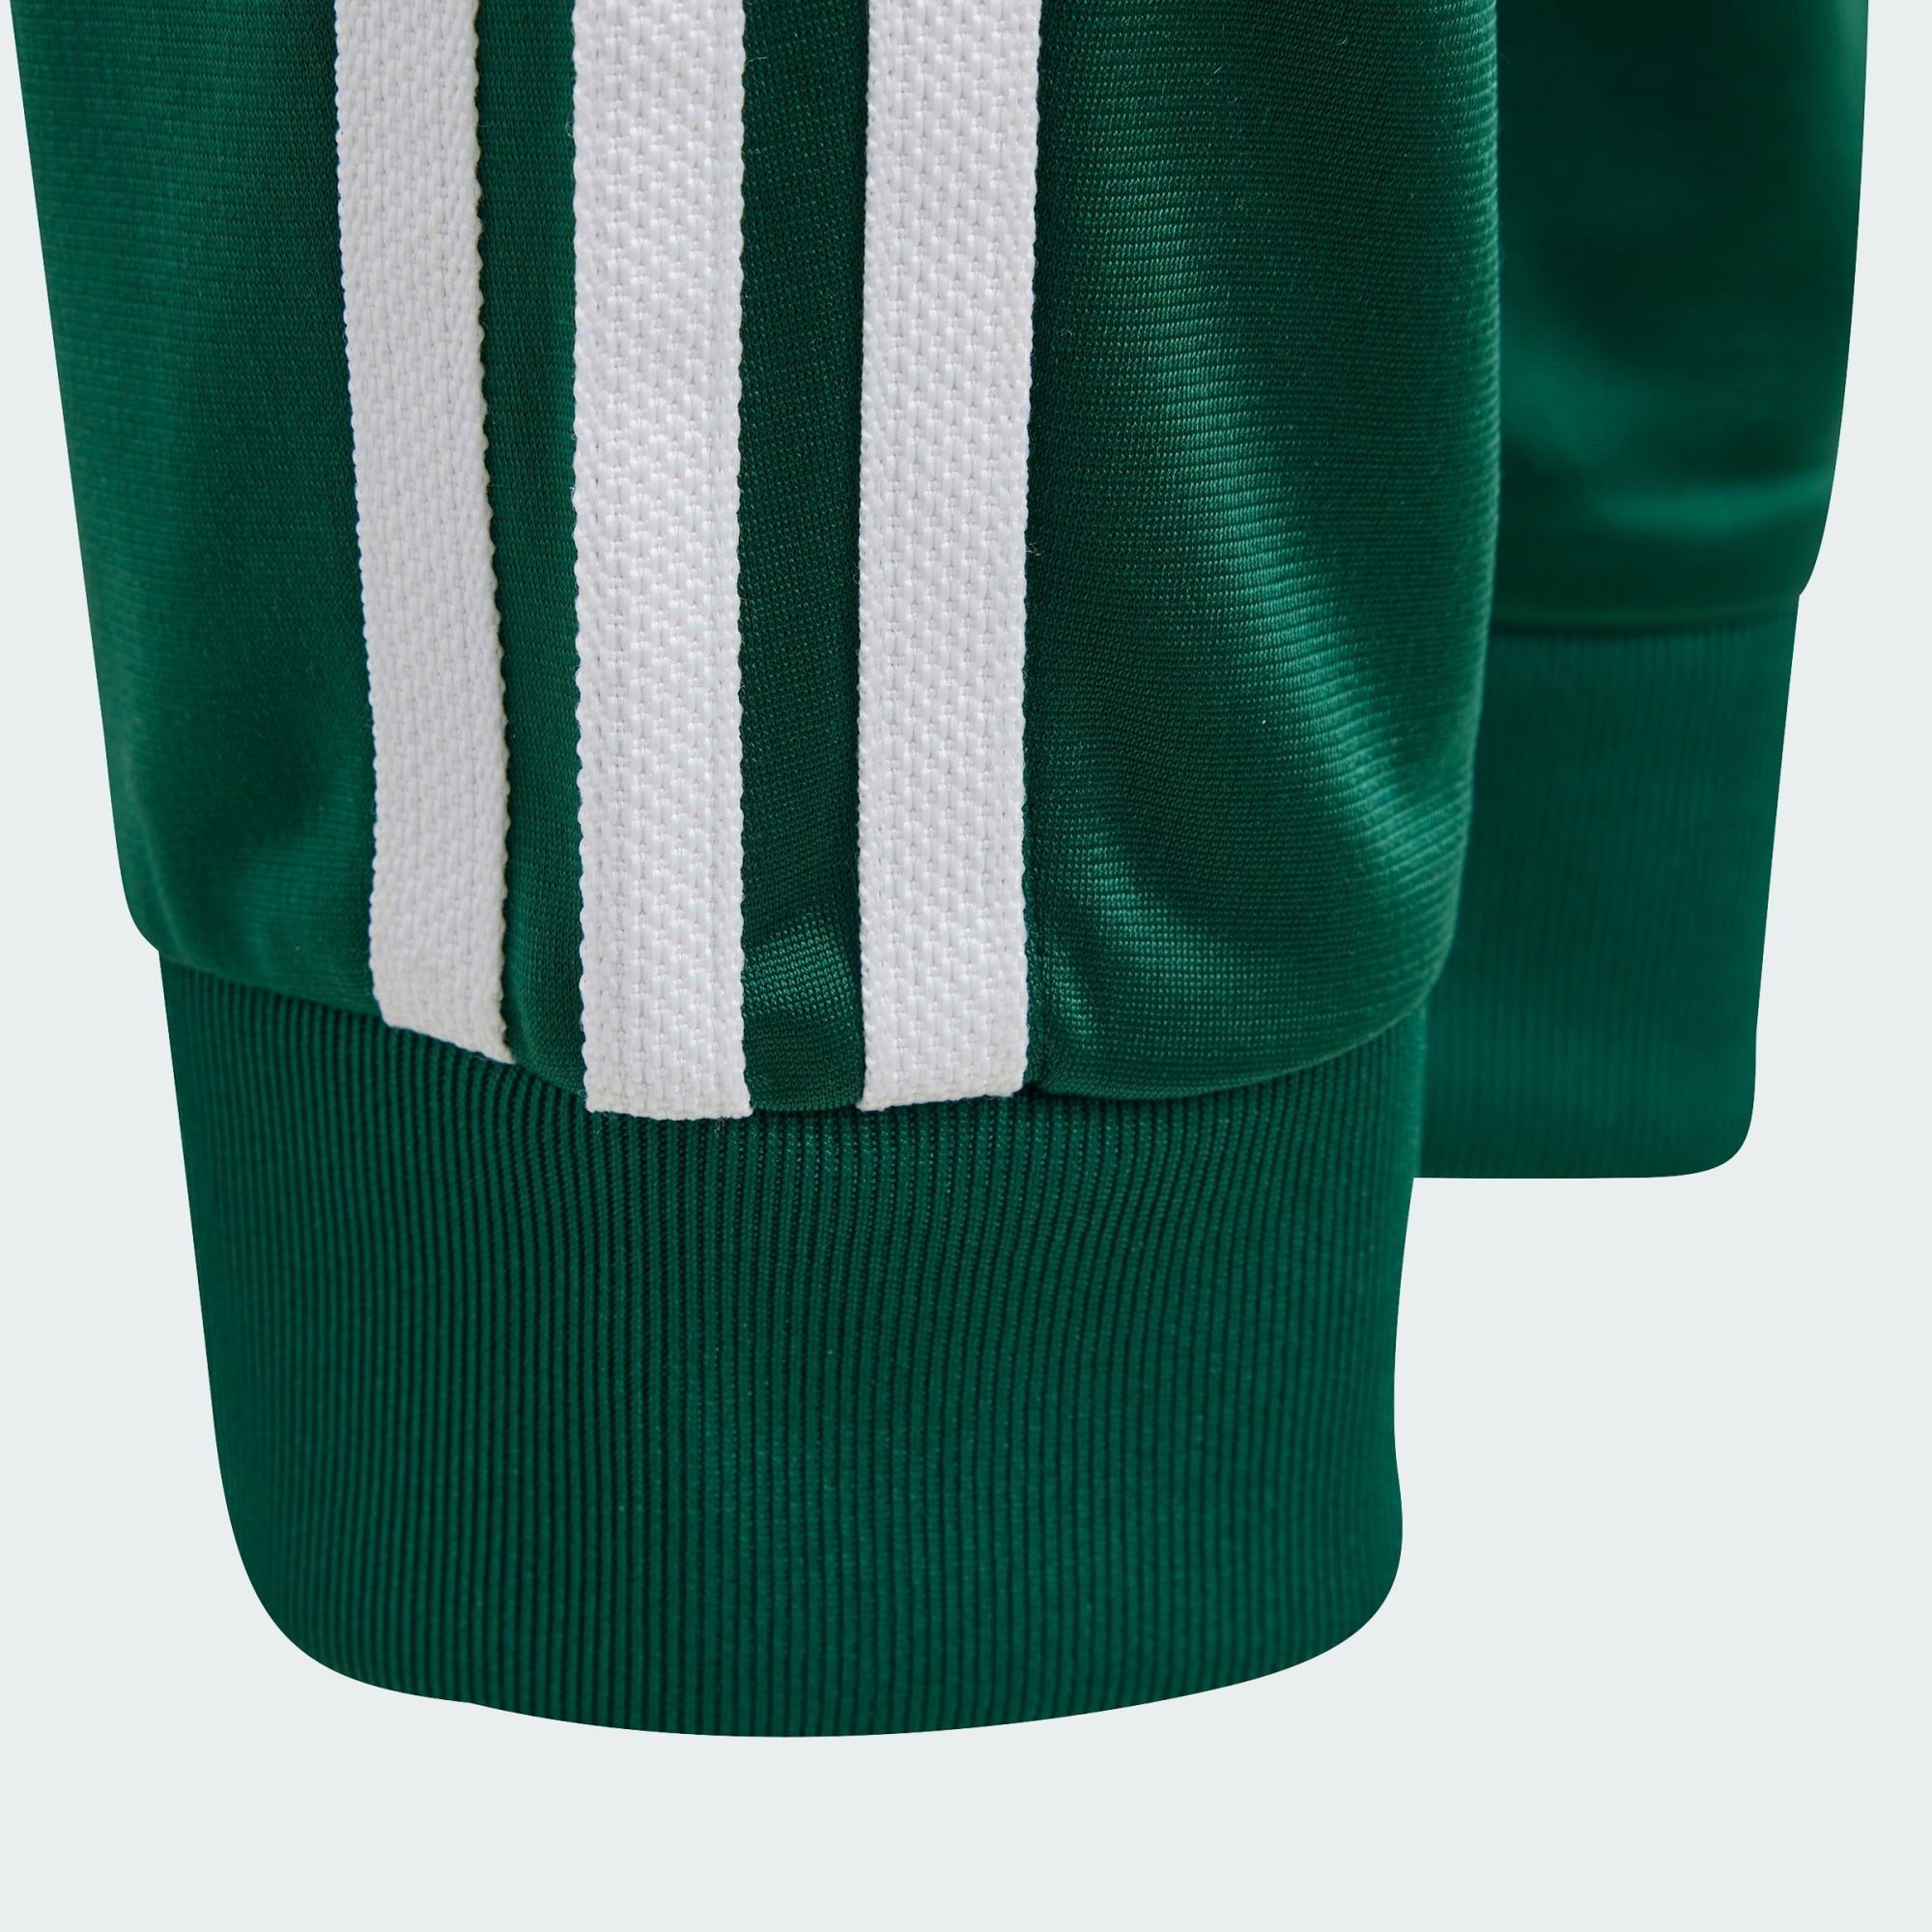 SST Originals ADICOLOR TRAININGSHOSE Collegiate Leichtathletik-Hose adidas Green